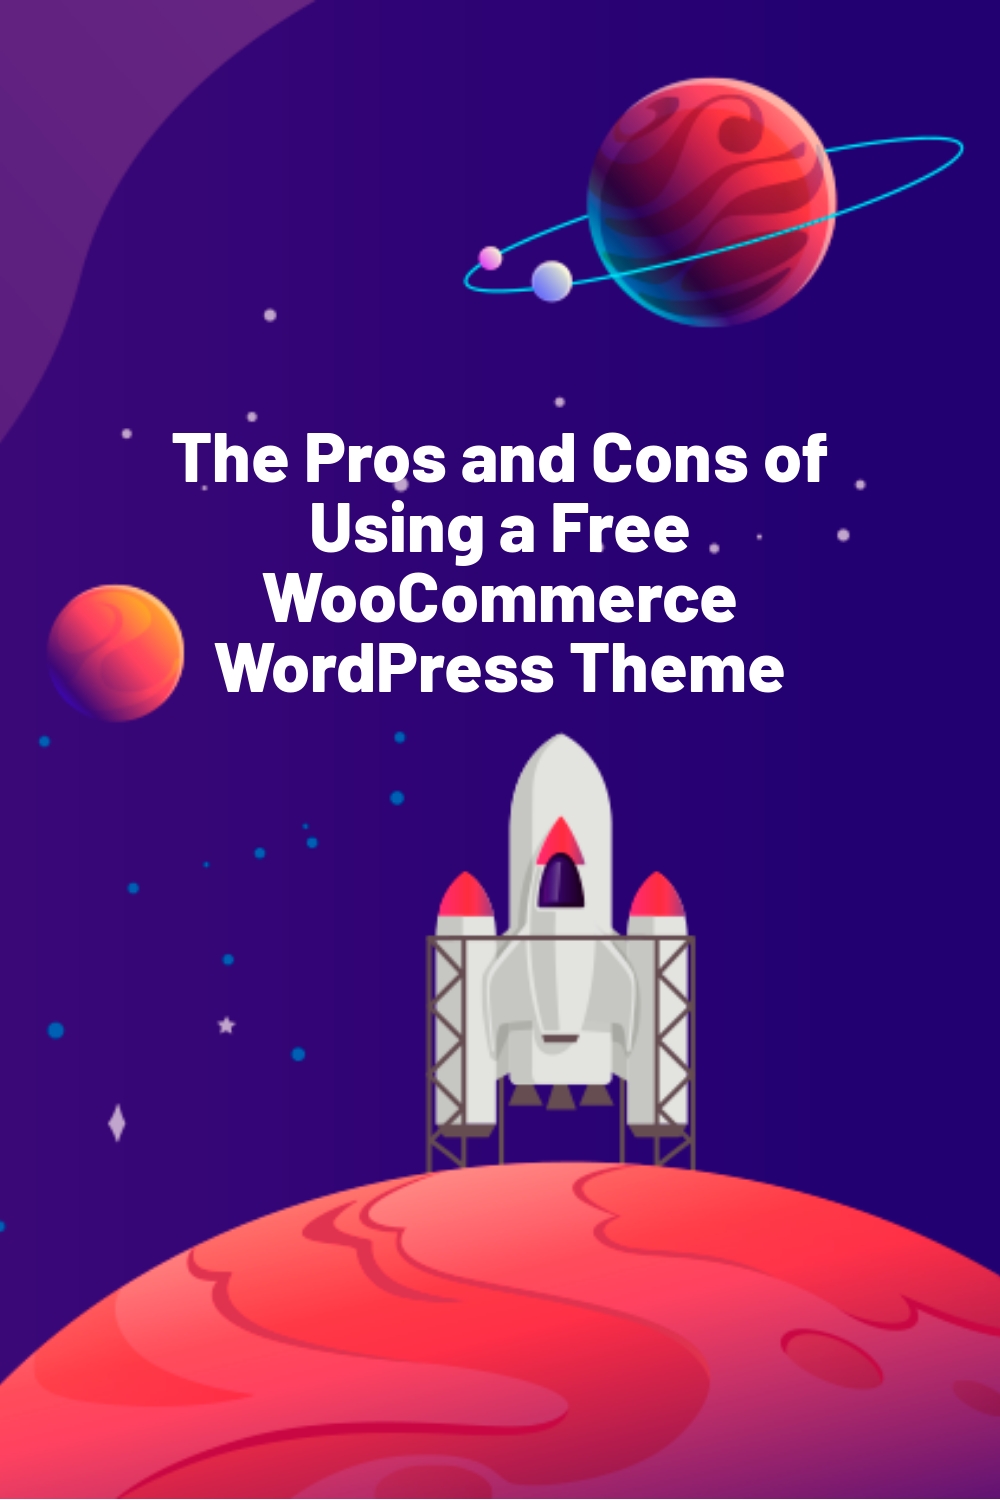 Les avantages et les inconvénients de l'utilisation d'un thème WordPress WooCommerce gratuit